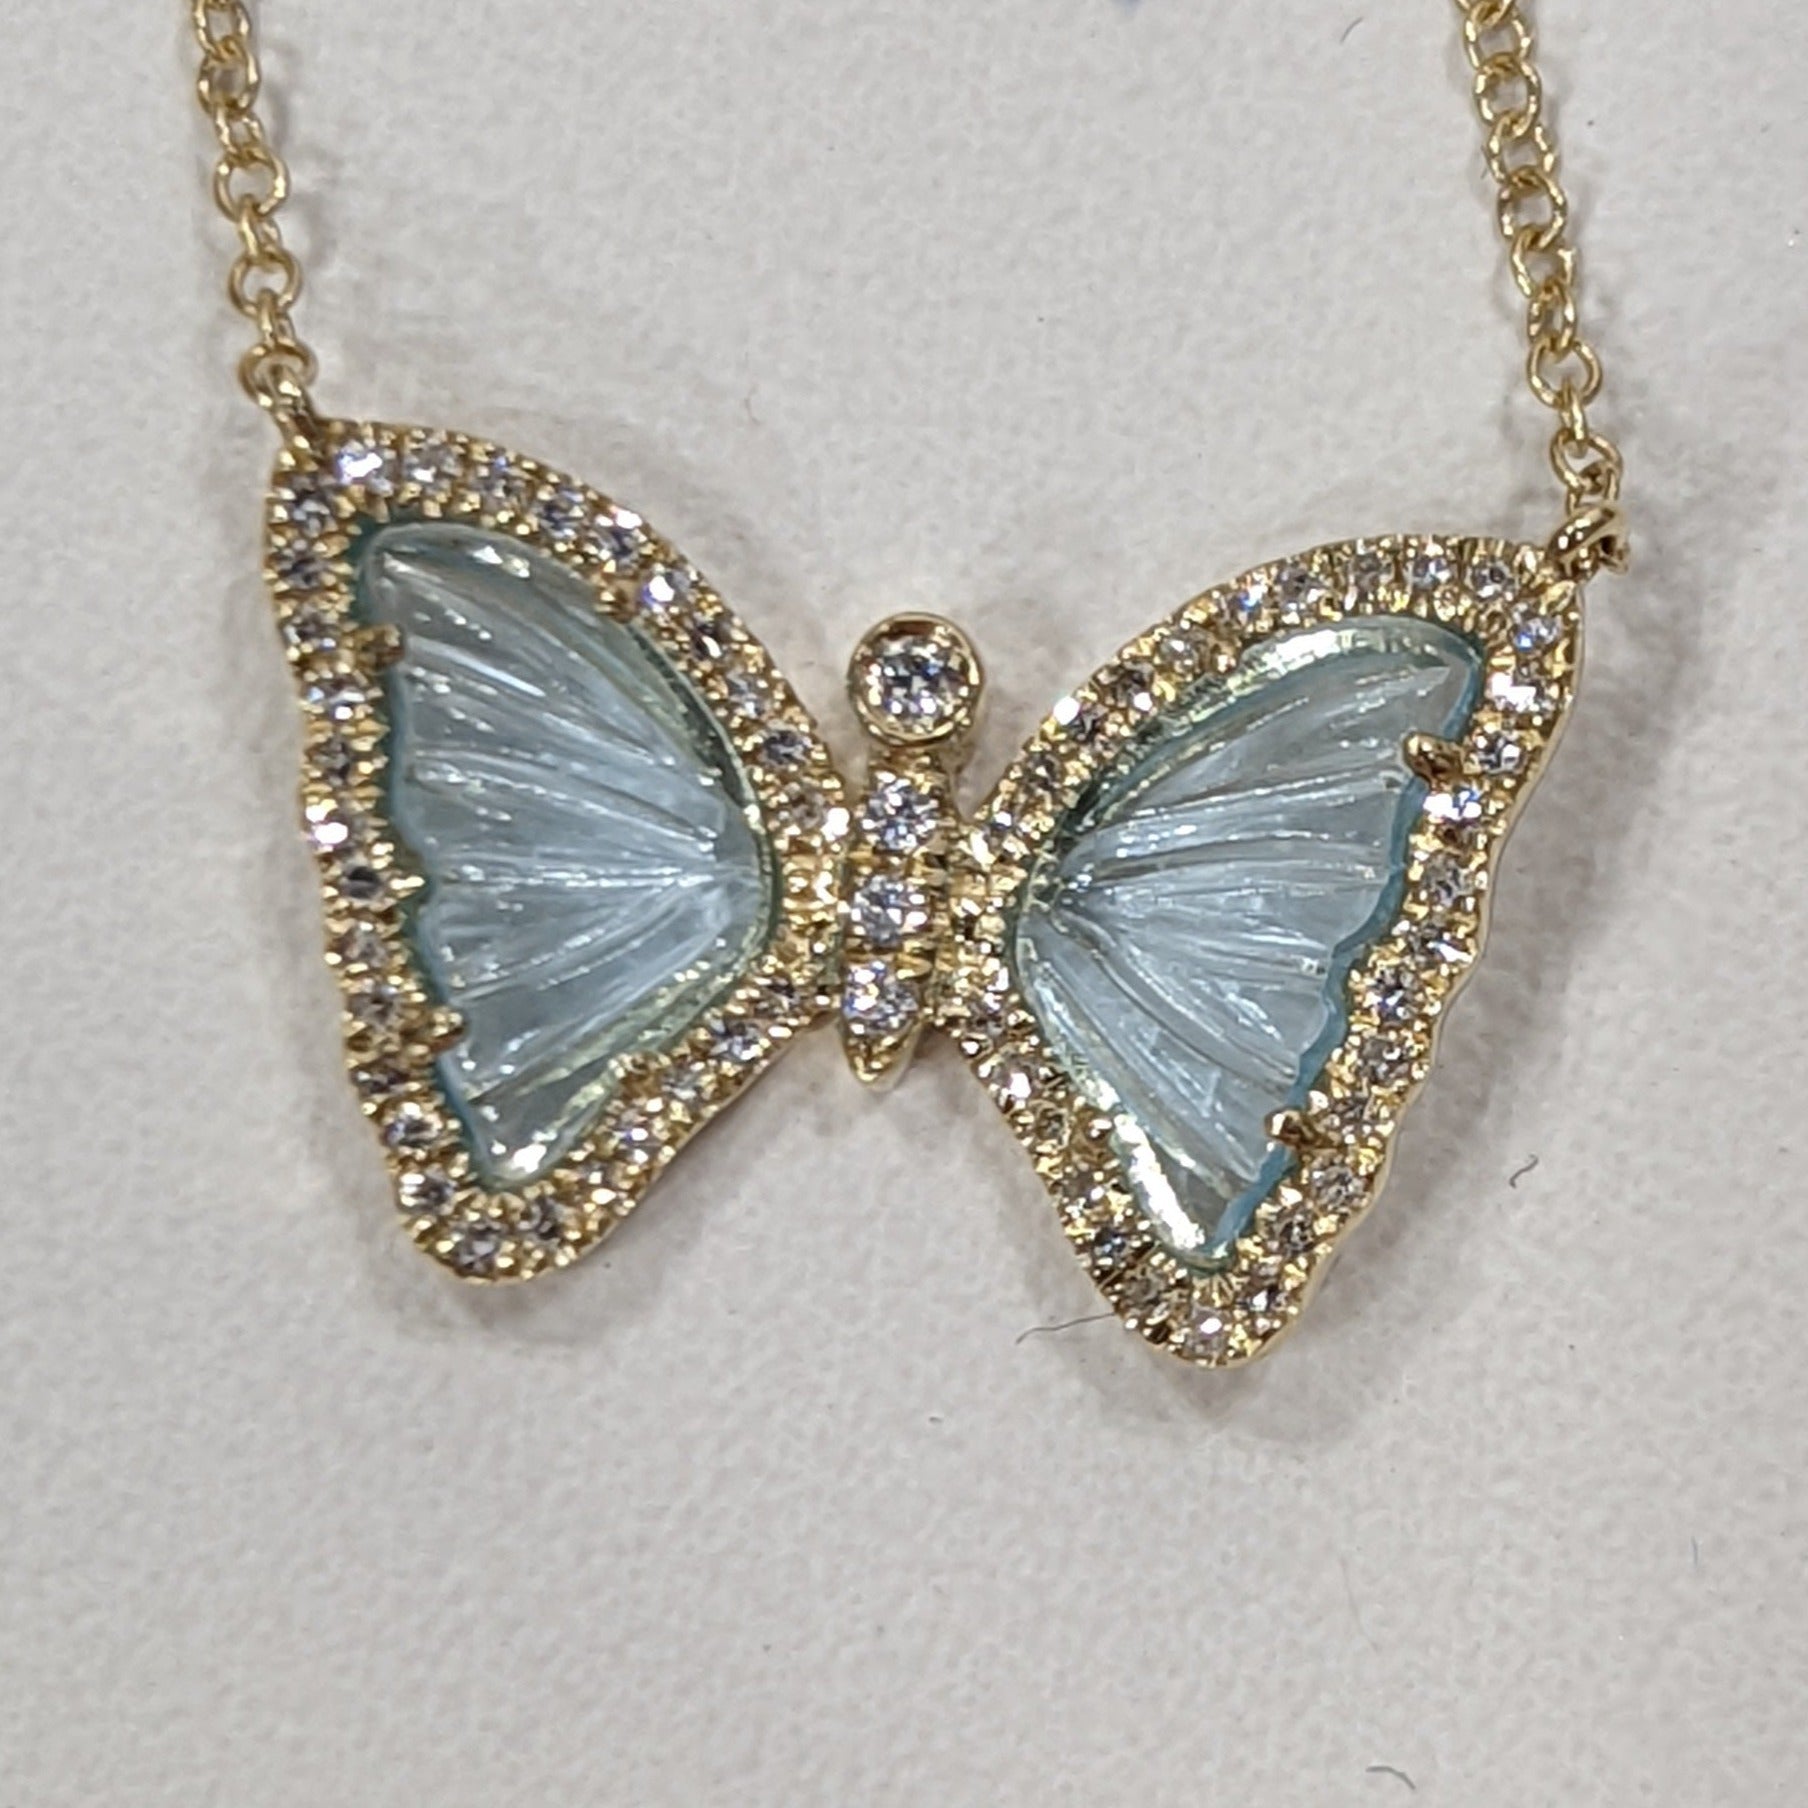 Mini Swiss Blue Topaz Butterfly Necklace with Diamonds